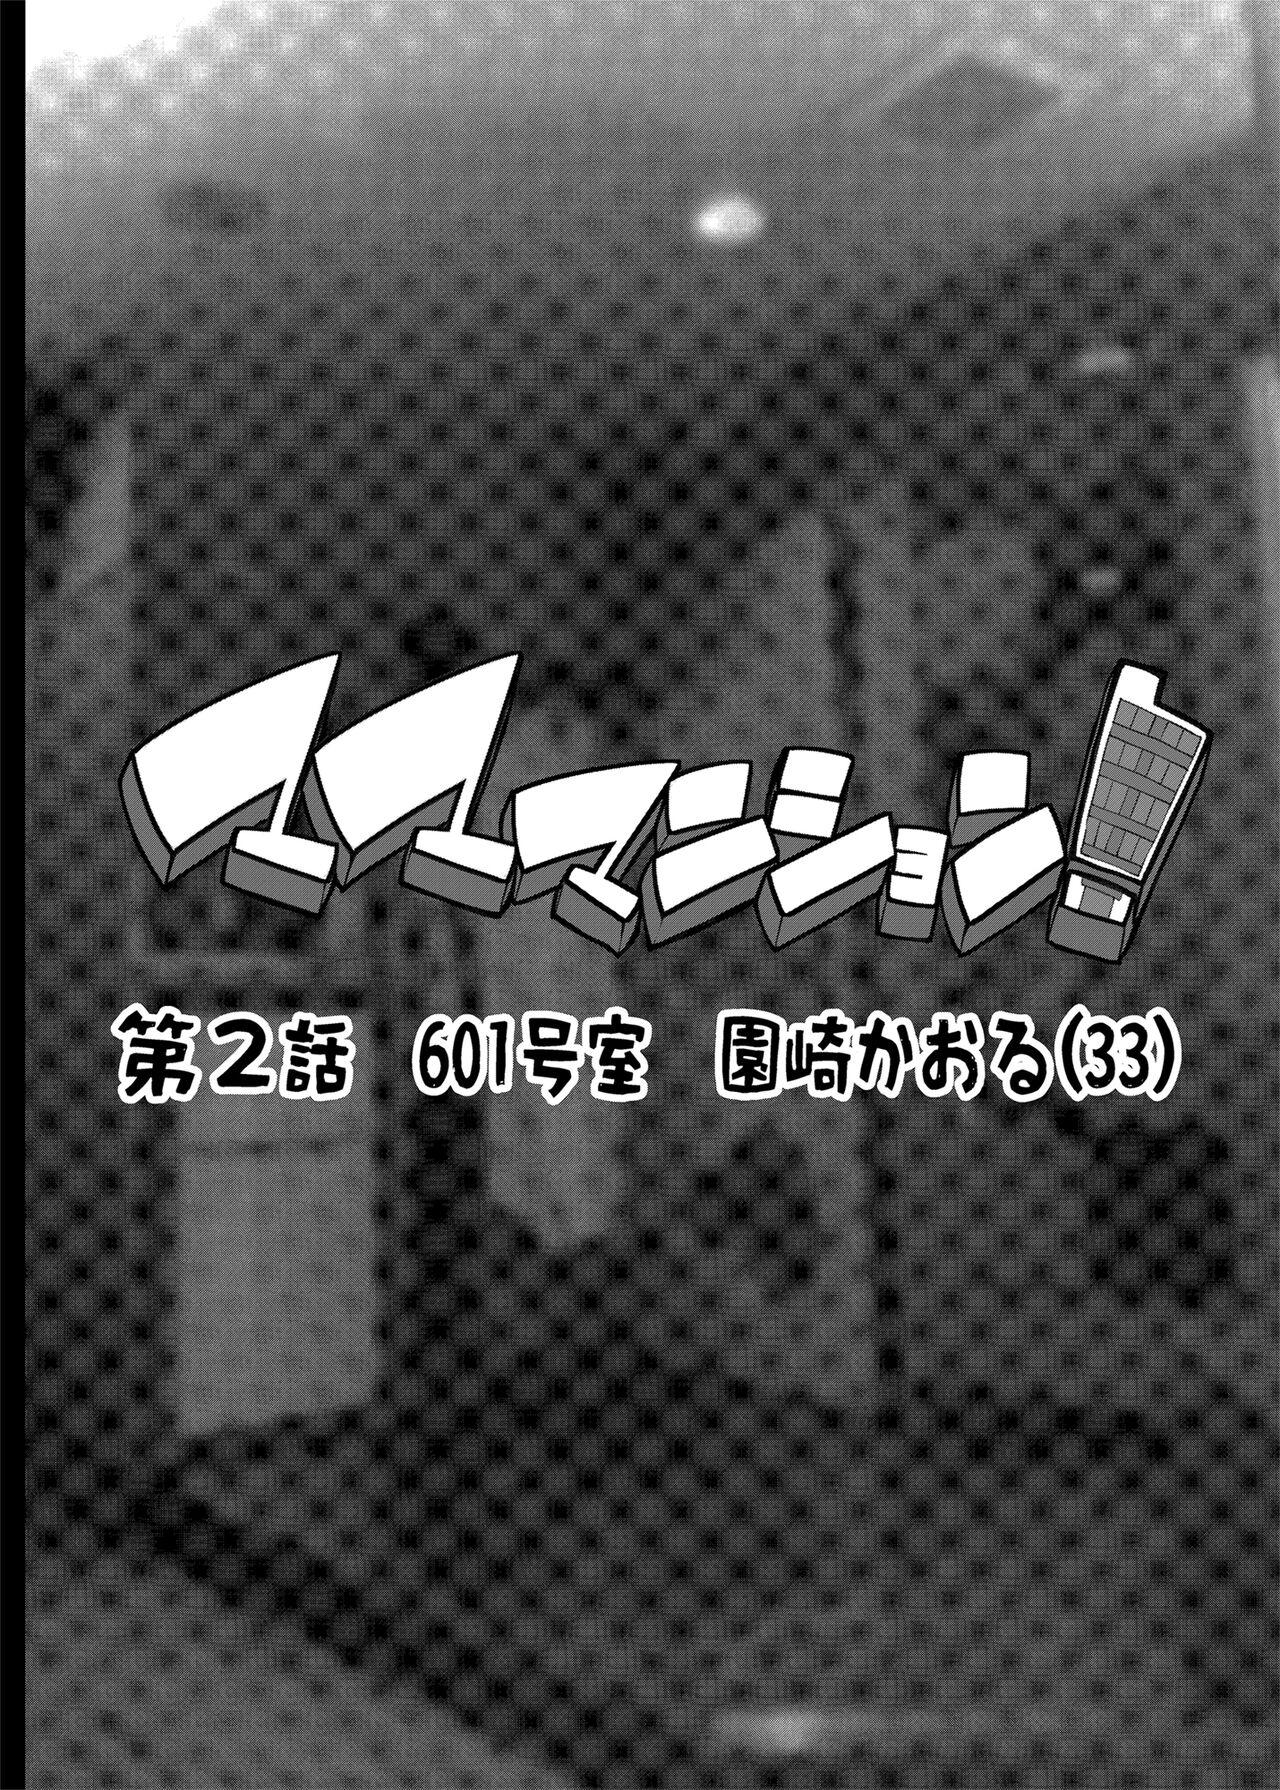 Free Hardcore Porn Mama Masion! Dainiwa 601 Goushitsu Sonosaki Kaoru - Original Collar - Picture 2